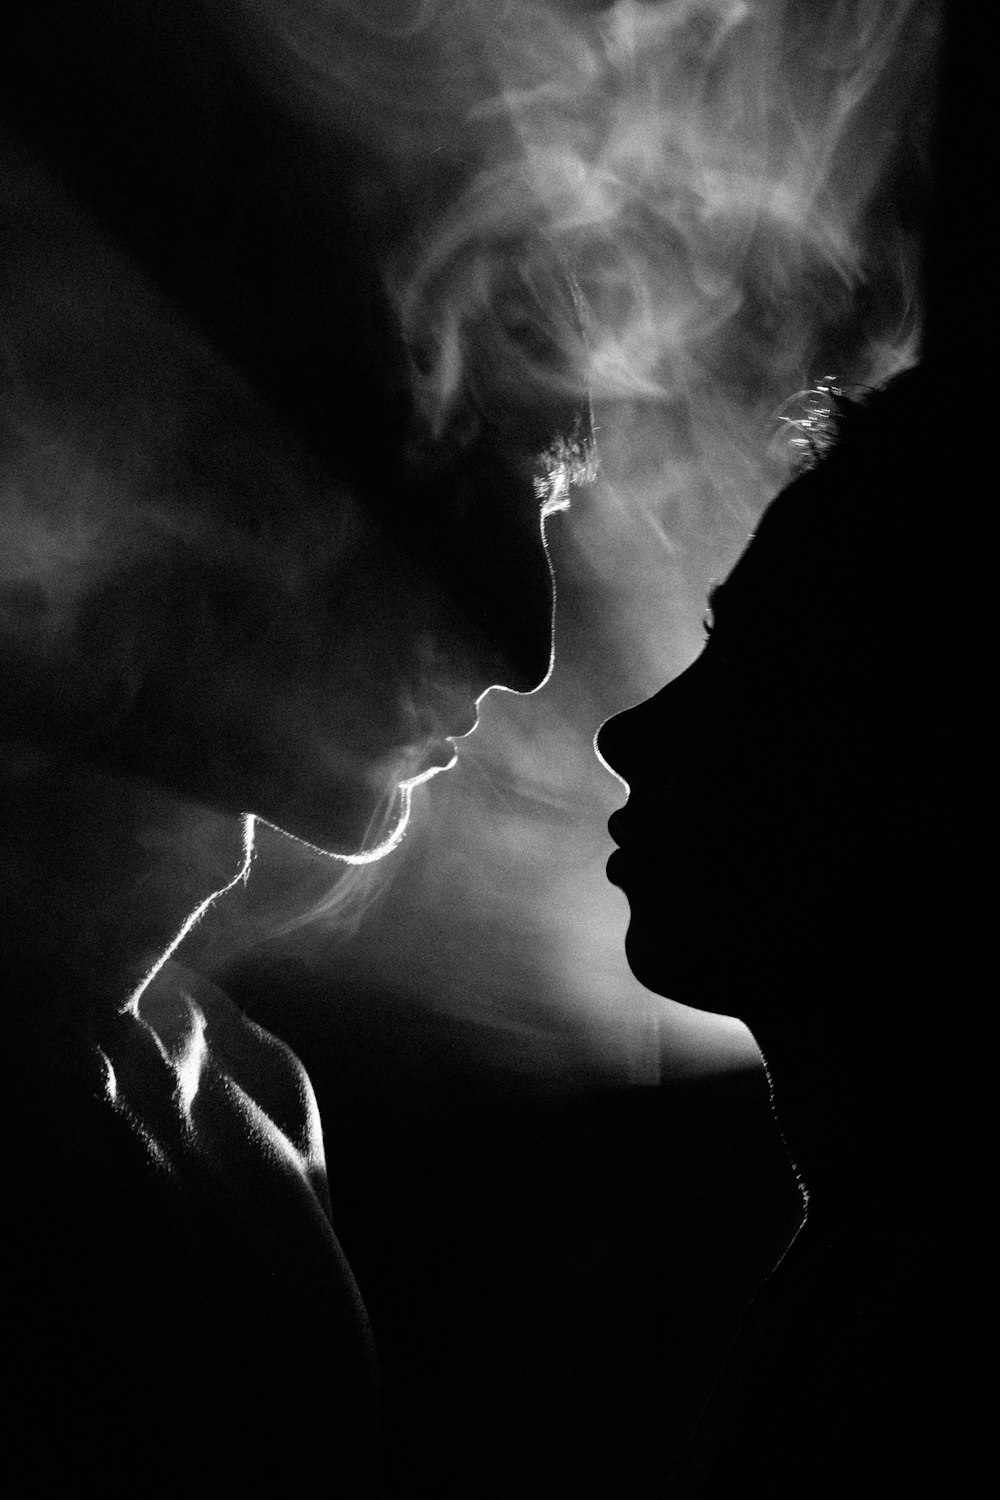 Una foto en blanco y negro de una mujer fumando un cigarrillo